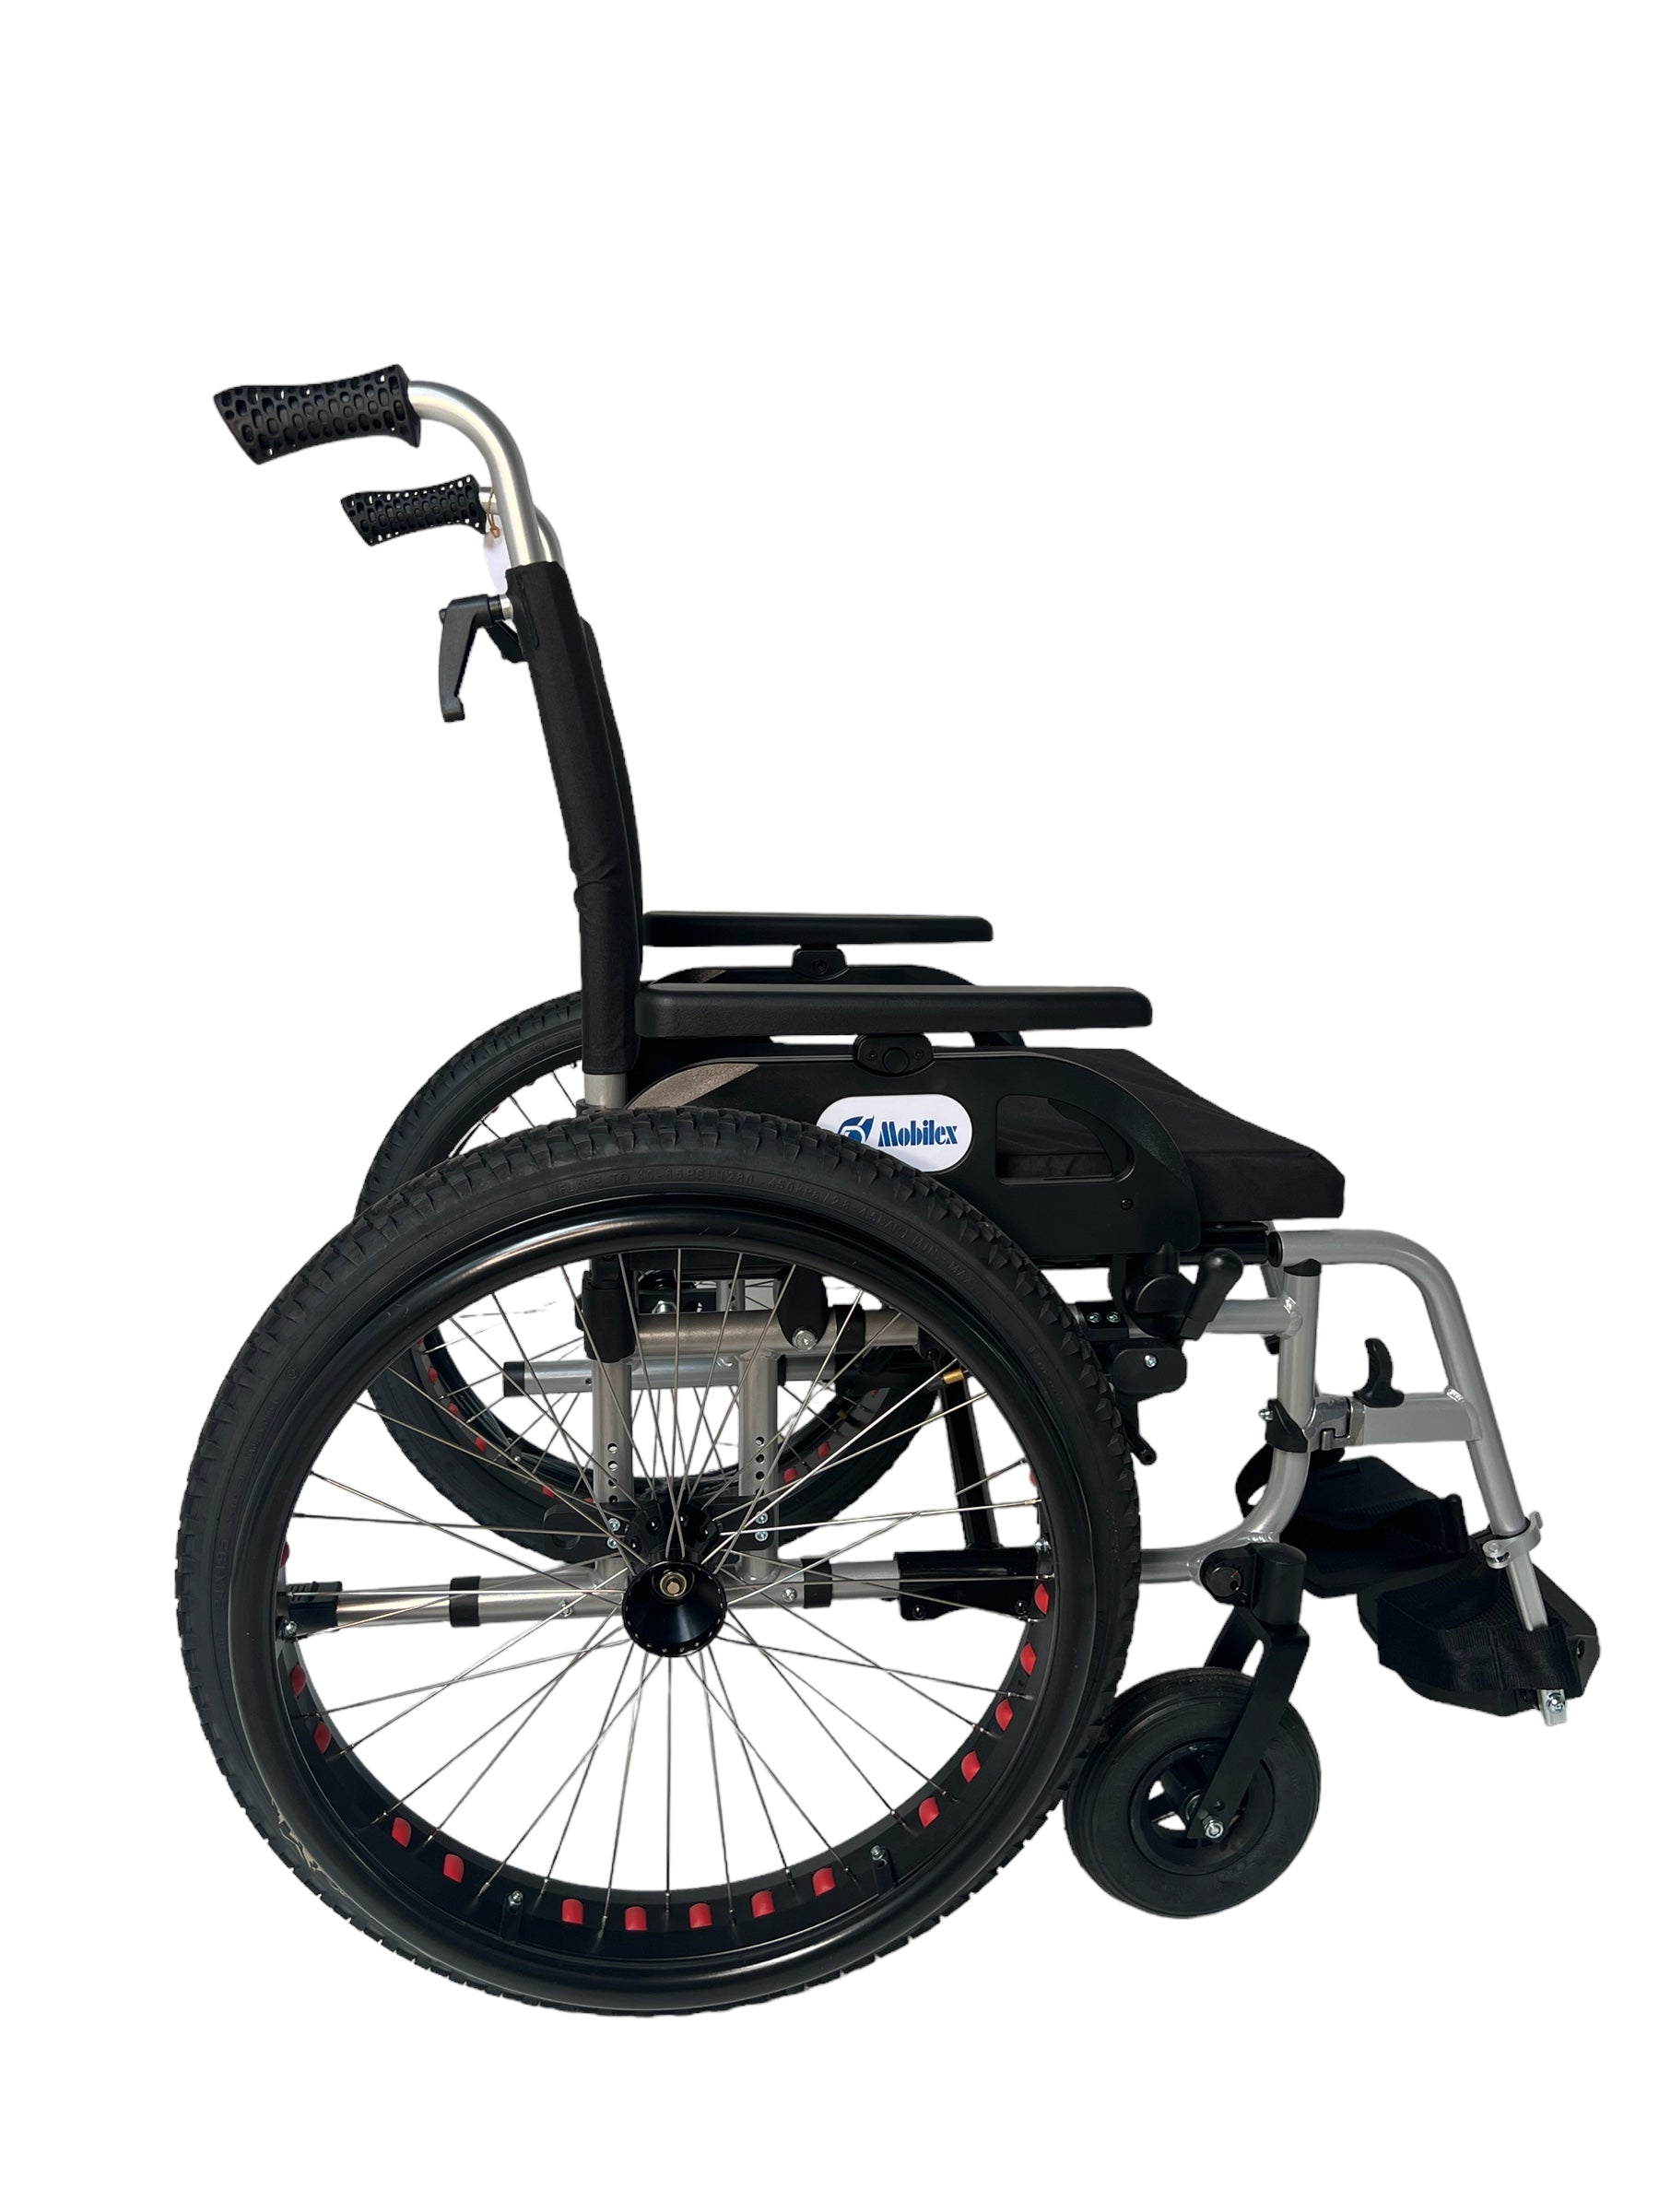 Billede af OFF-ROAD kørestol. Super lækker kørestol med terrængående dæk. 4 størrelser., 40 cm